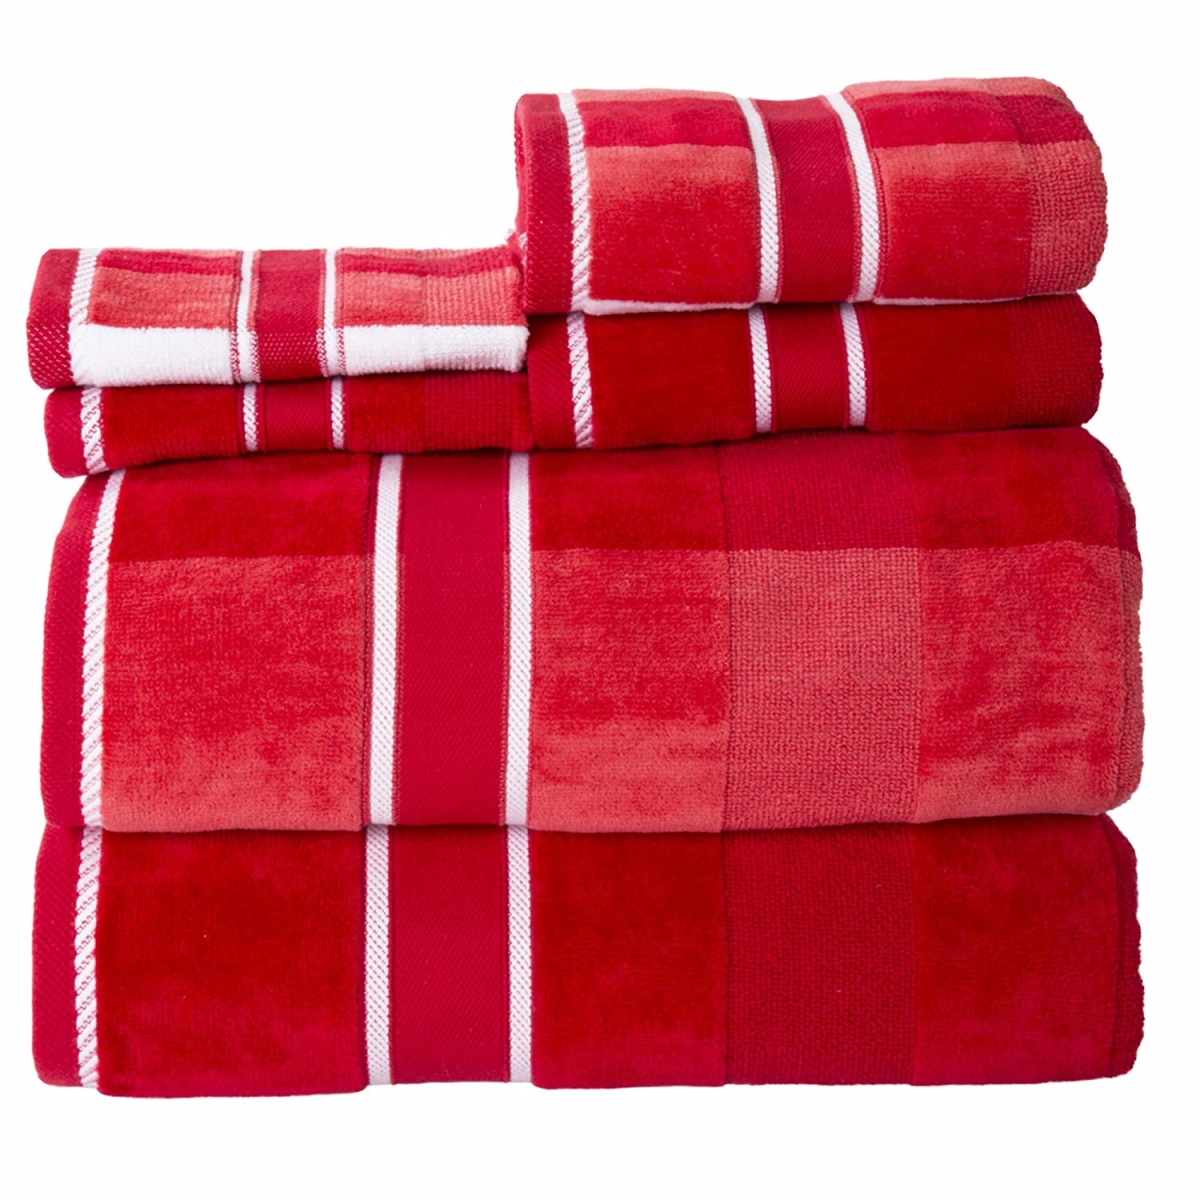 67a-76863 100 Percent Cotton Oakville Velour 6 Piece Towel Set - Red